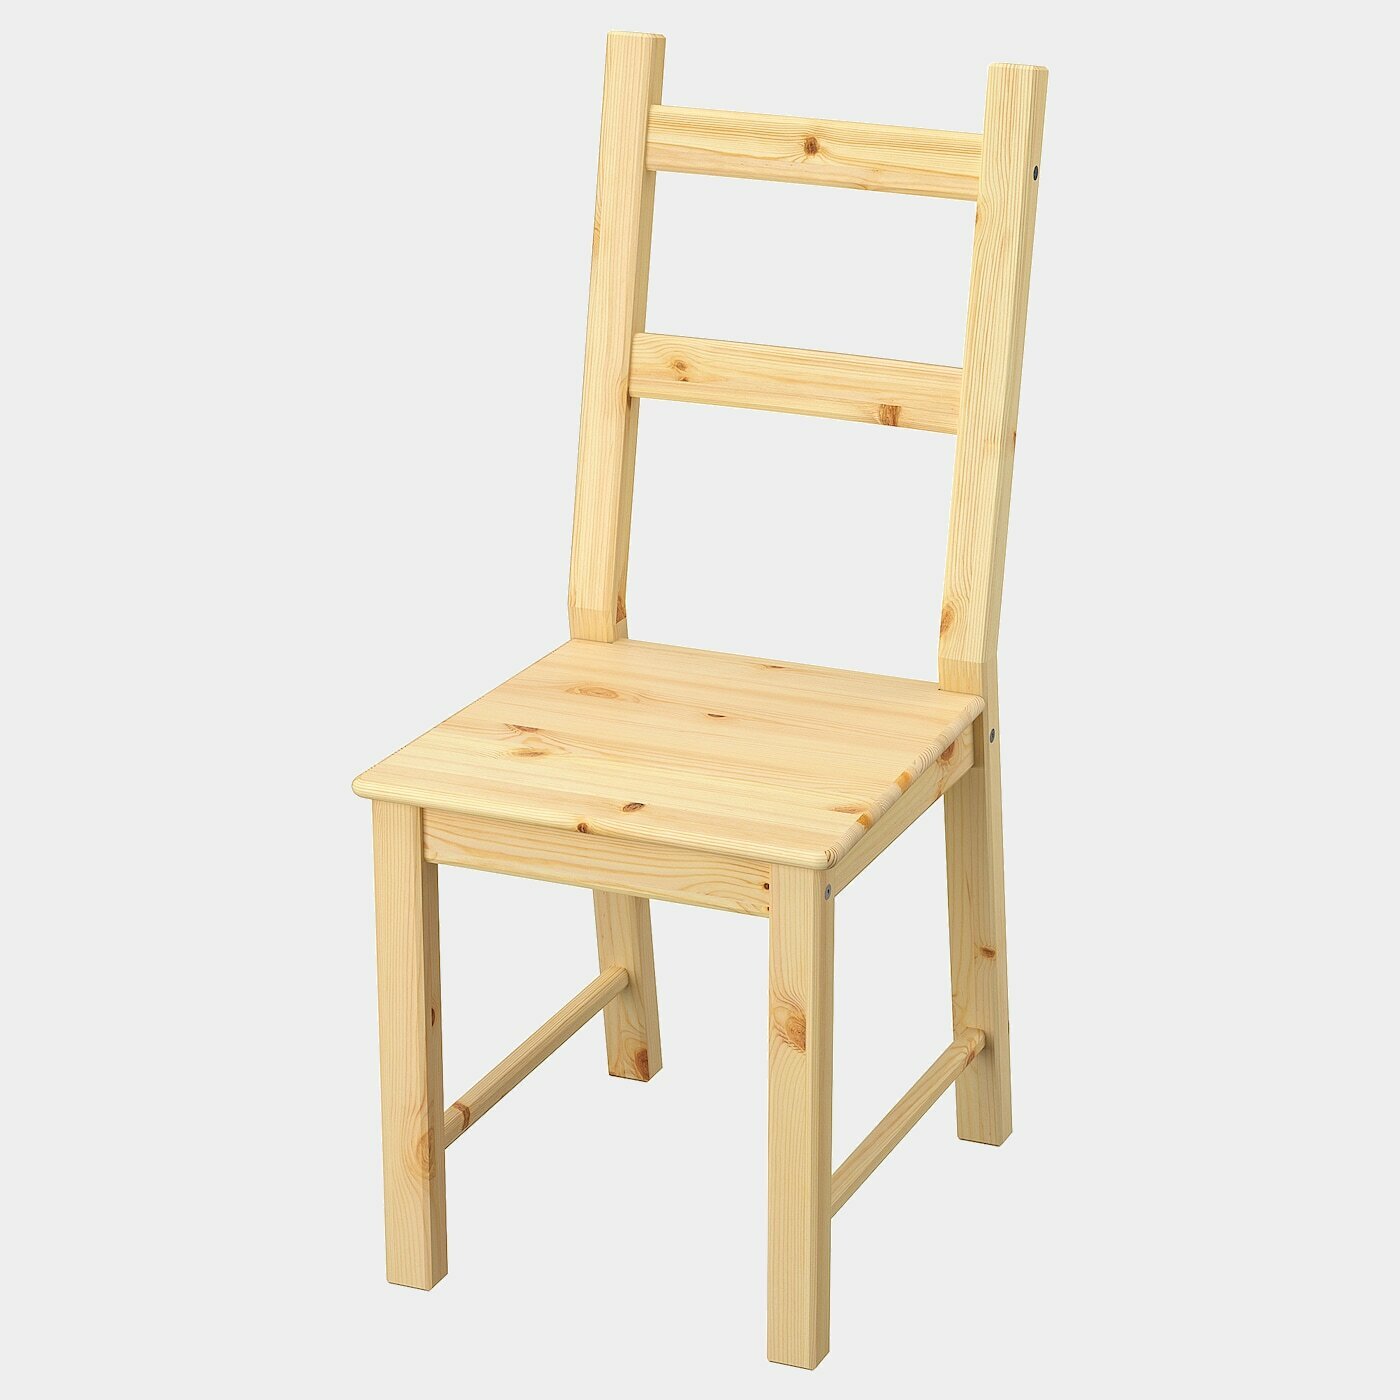 IVAR Stuhl  - Esszimmerstühle - Möbel Ideen für dein Zuhause von Home Trends. Möbel Trends von Social Media Influencer für dein Skandi Zuhause.